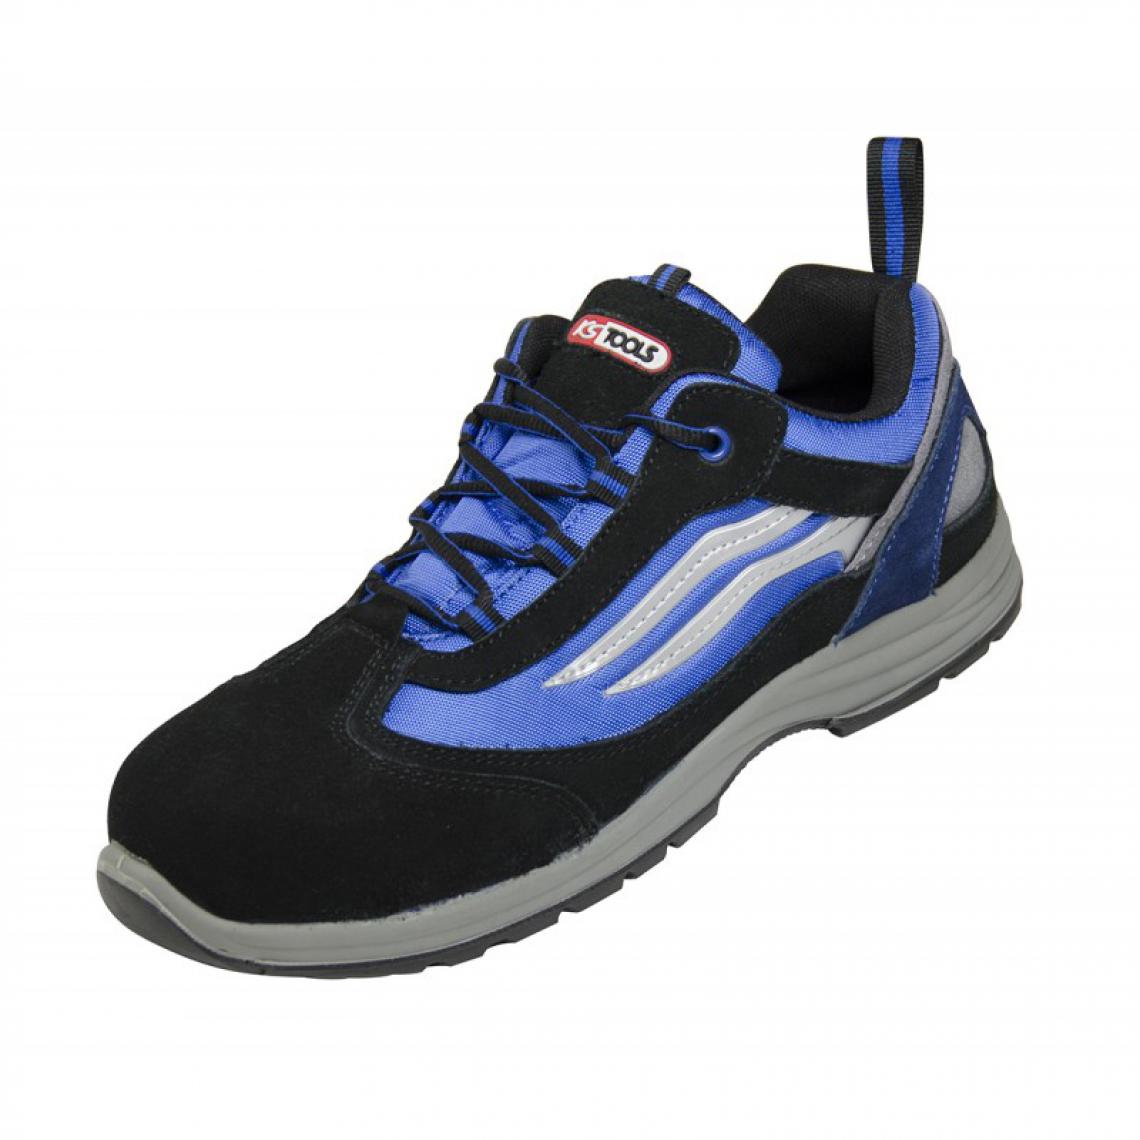 Kstools - Chaussures de sécurité KSTOOLS Couleur bleue et noire taille 39 - Equipement de Protection Individuelle